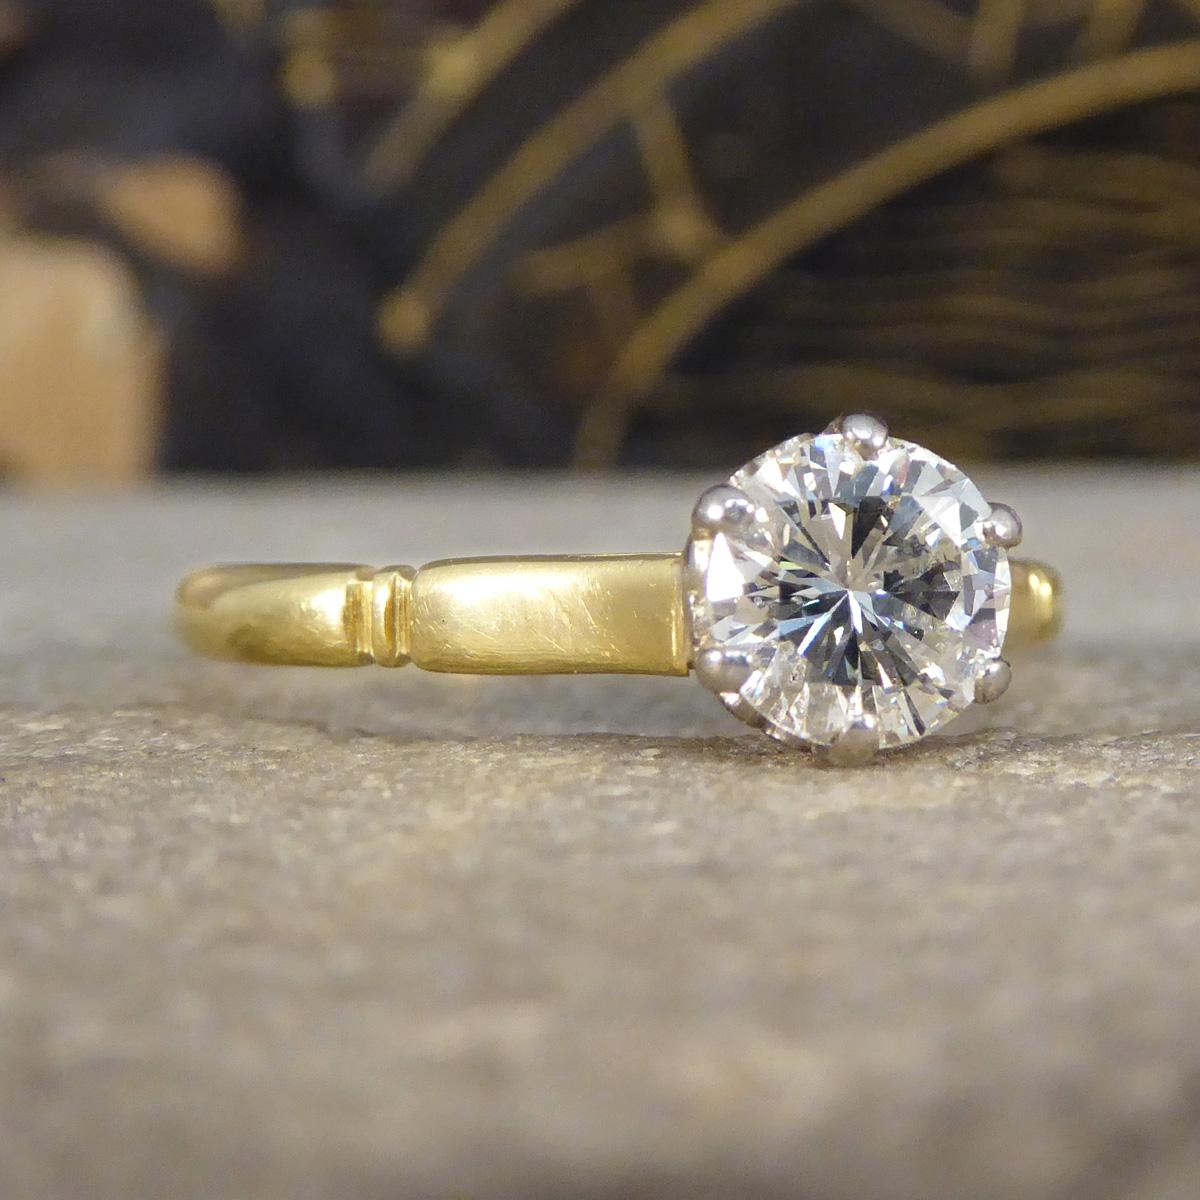 Cette bague solitaire vintage de 0,82 ct de diamant est une pièce époustouflante, d'une élégance intemporelle et d'une beauté classique. Fabriquée de main de maître dans un riche or jaune testé comme 18ct, la bague est ornée d'un magnifique